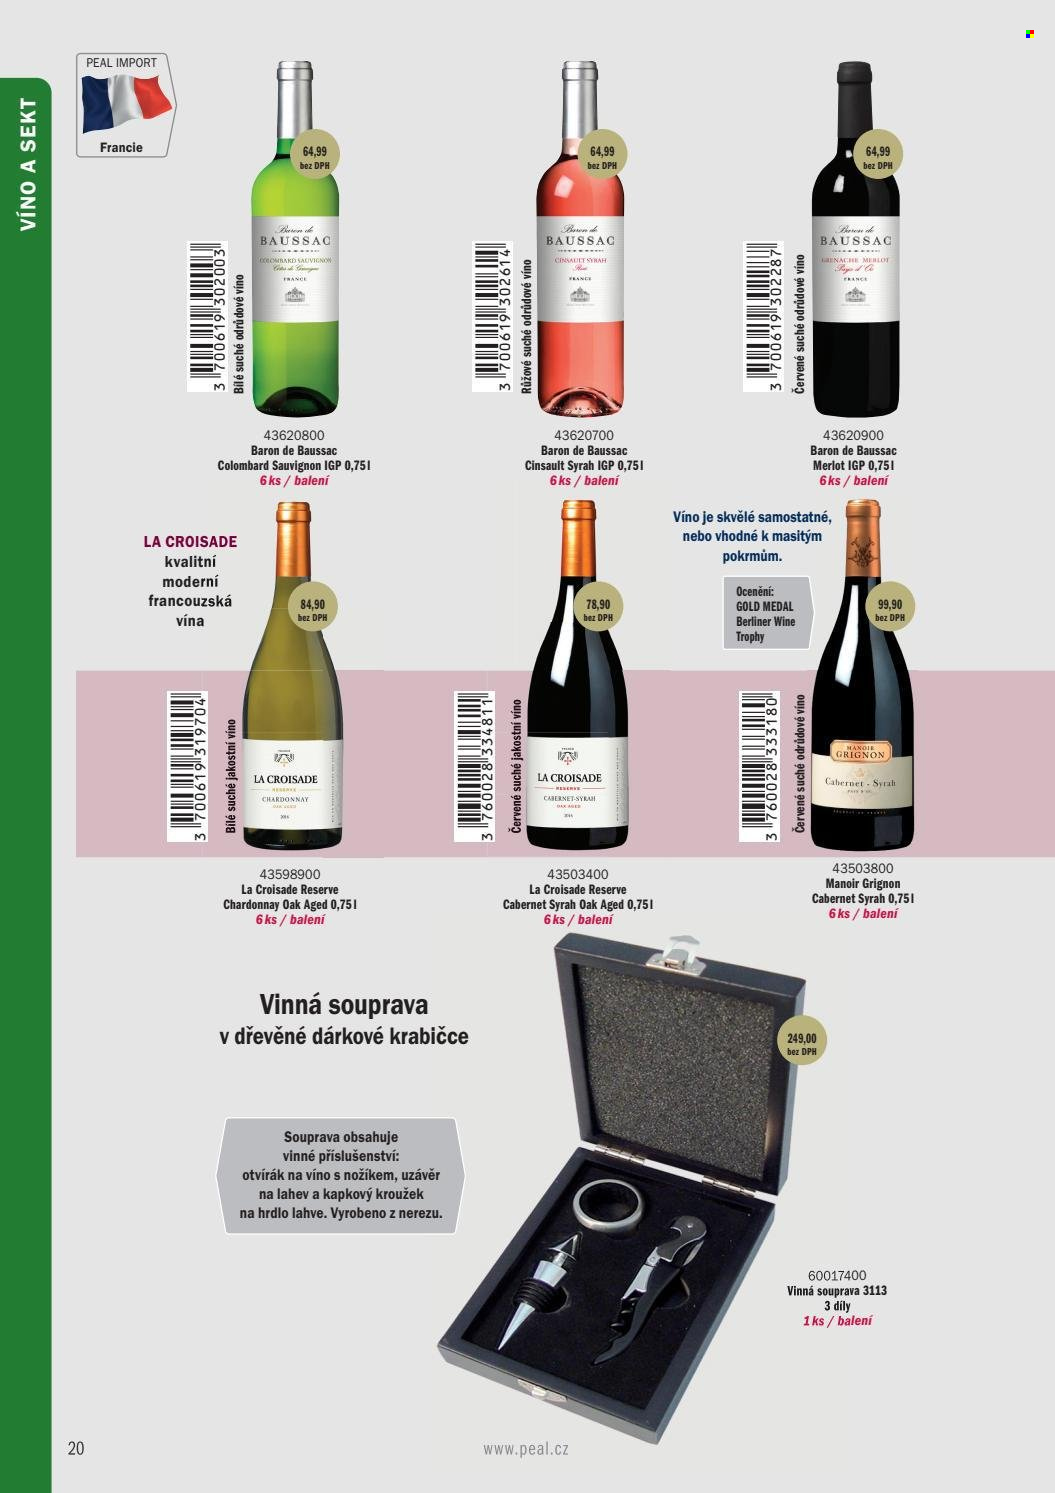 thumbnail - Leták PEAL - Produkty v akci - bílé víno, červené víno, sekt, Chardonnay, Merlot, Syrah. Strana 10.